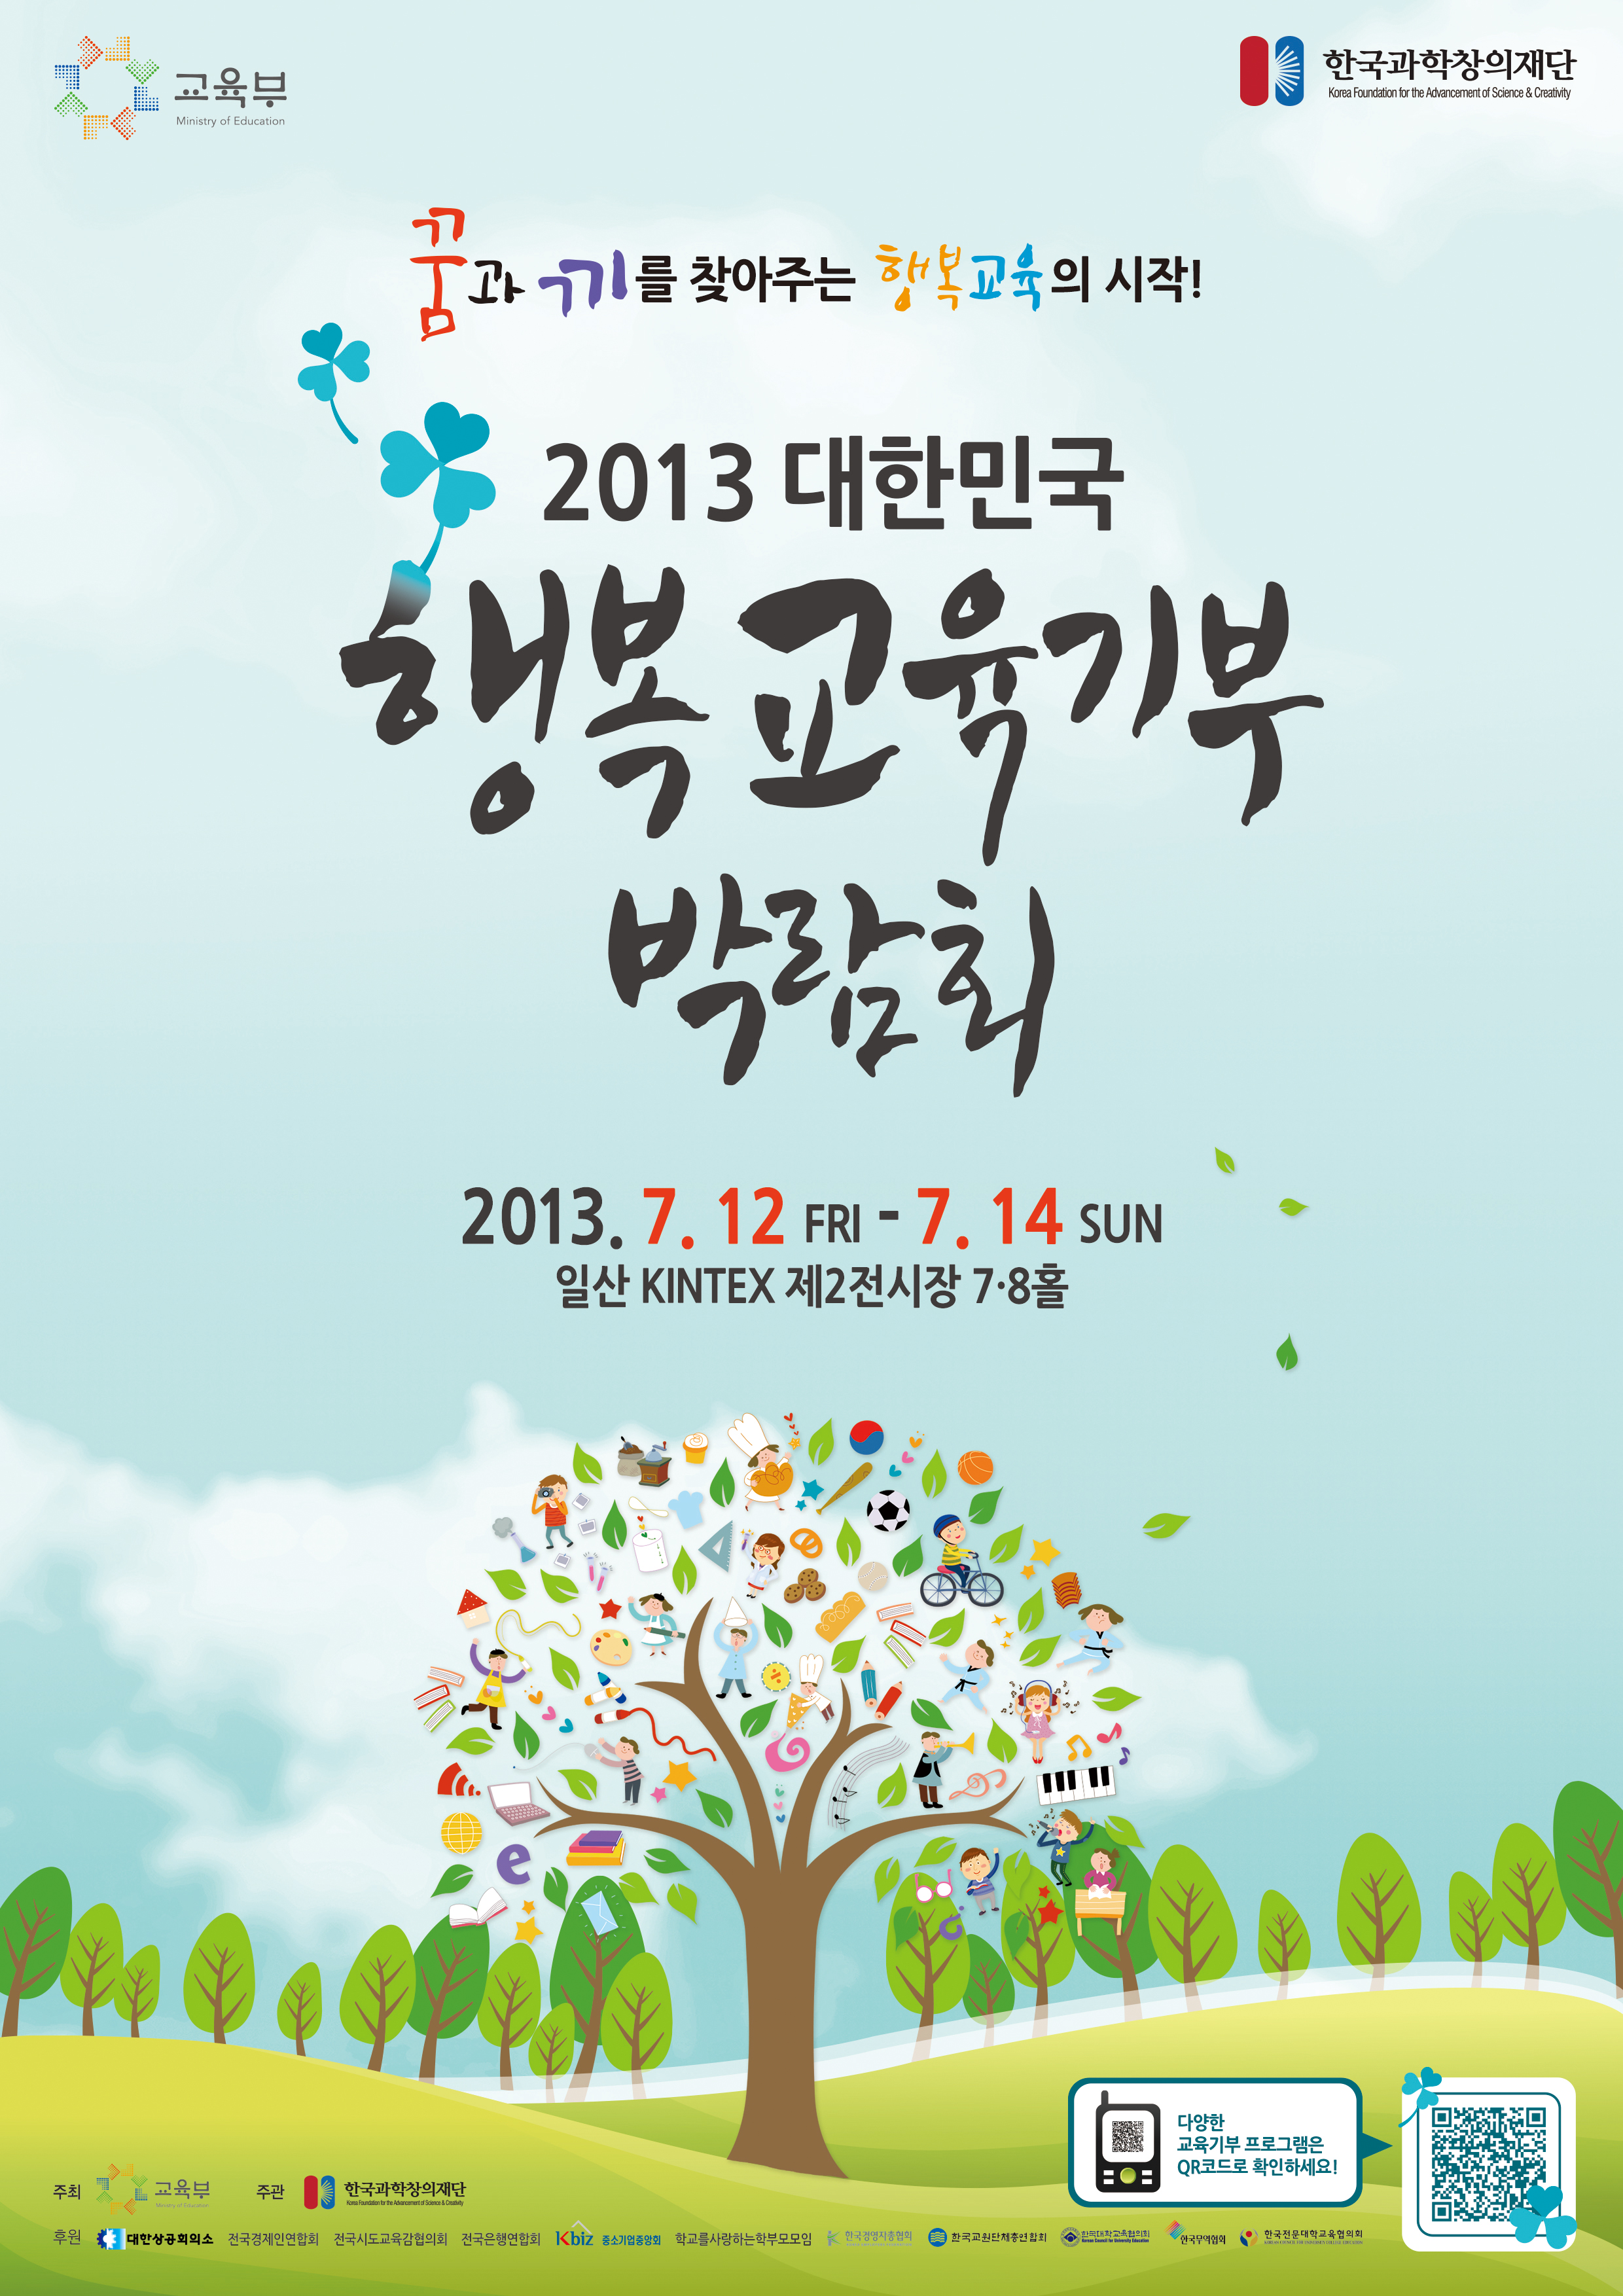 ‘2013 대한민국 행복교육기부 박람회’ 개최 알림 이미지(1)